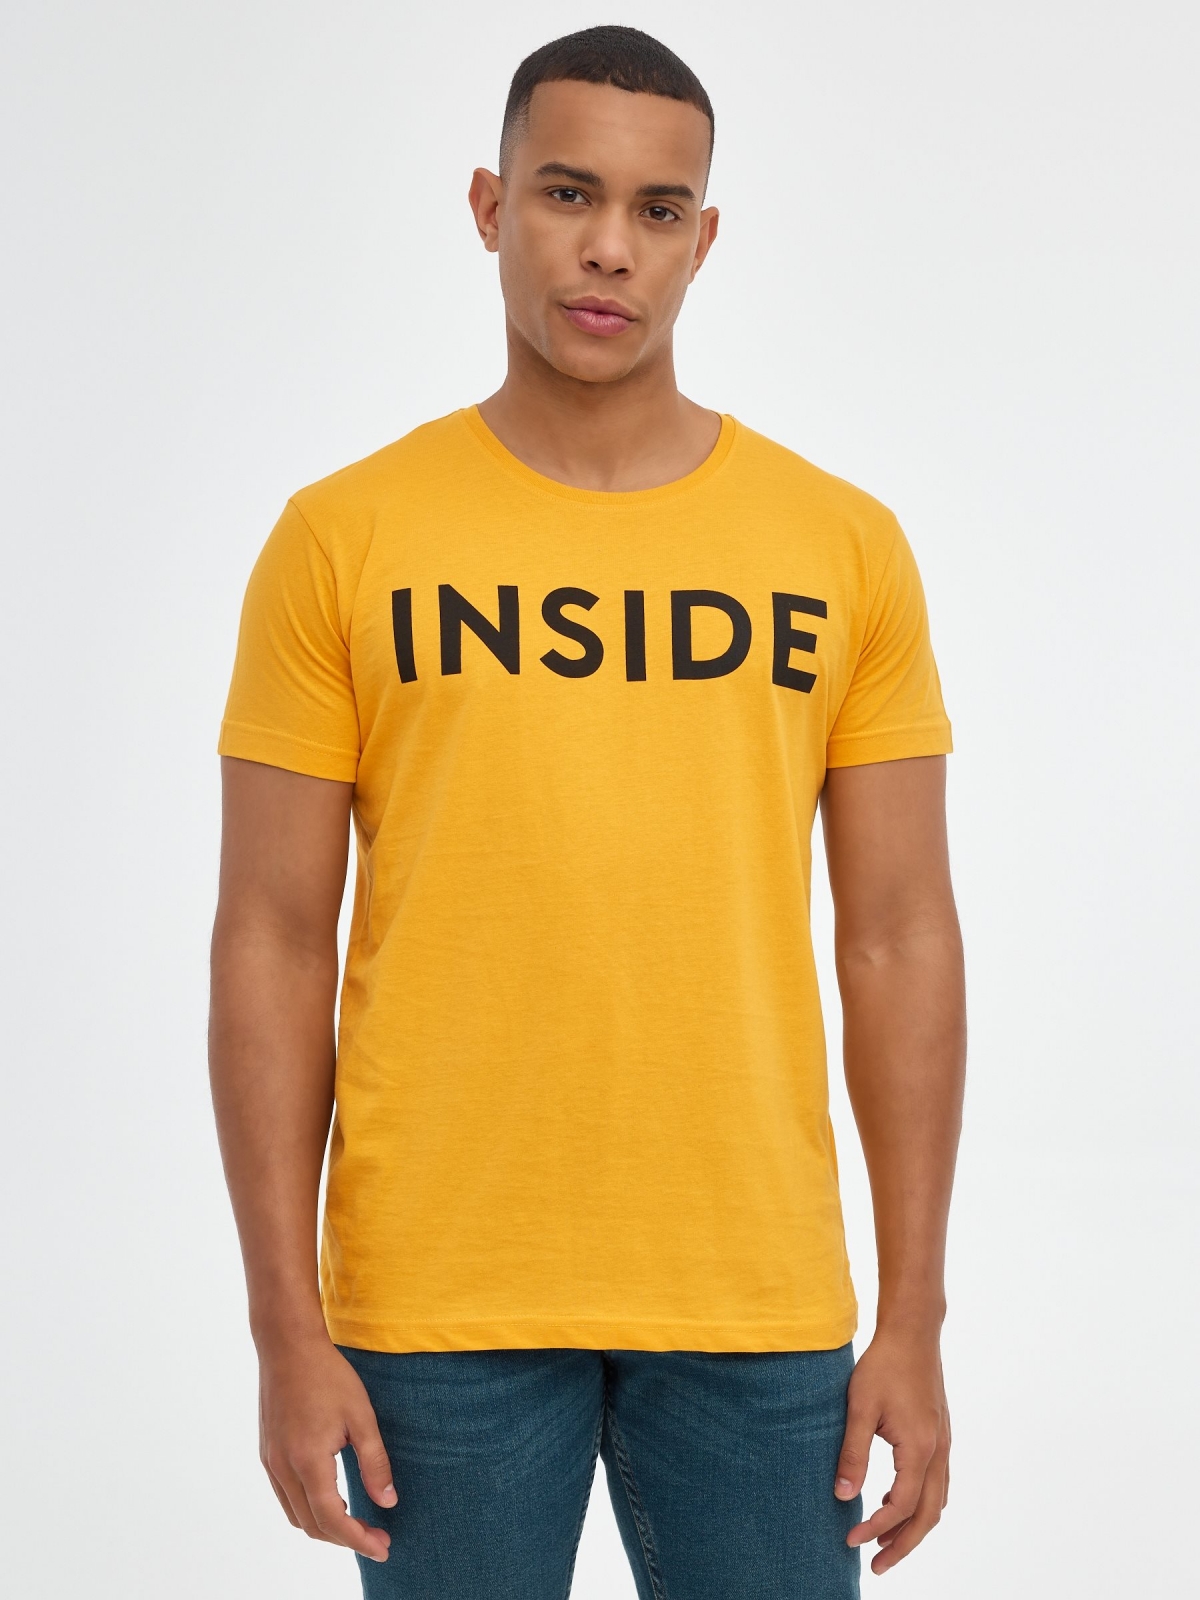 T-shirt básica "INSIDE ocre vista meia frontal